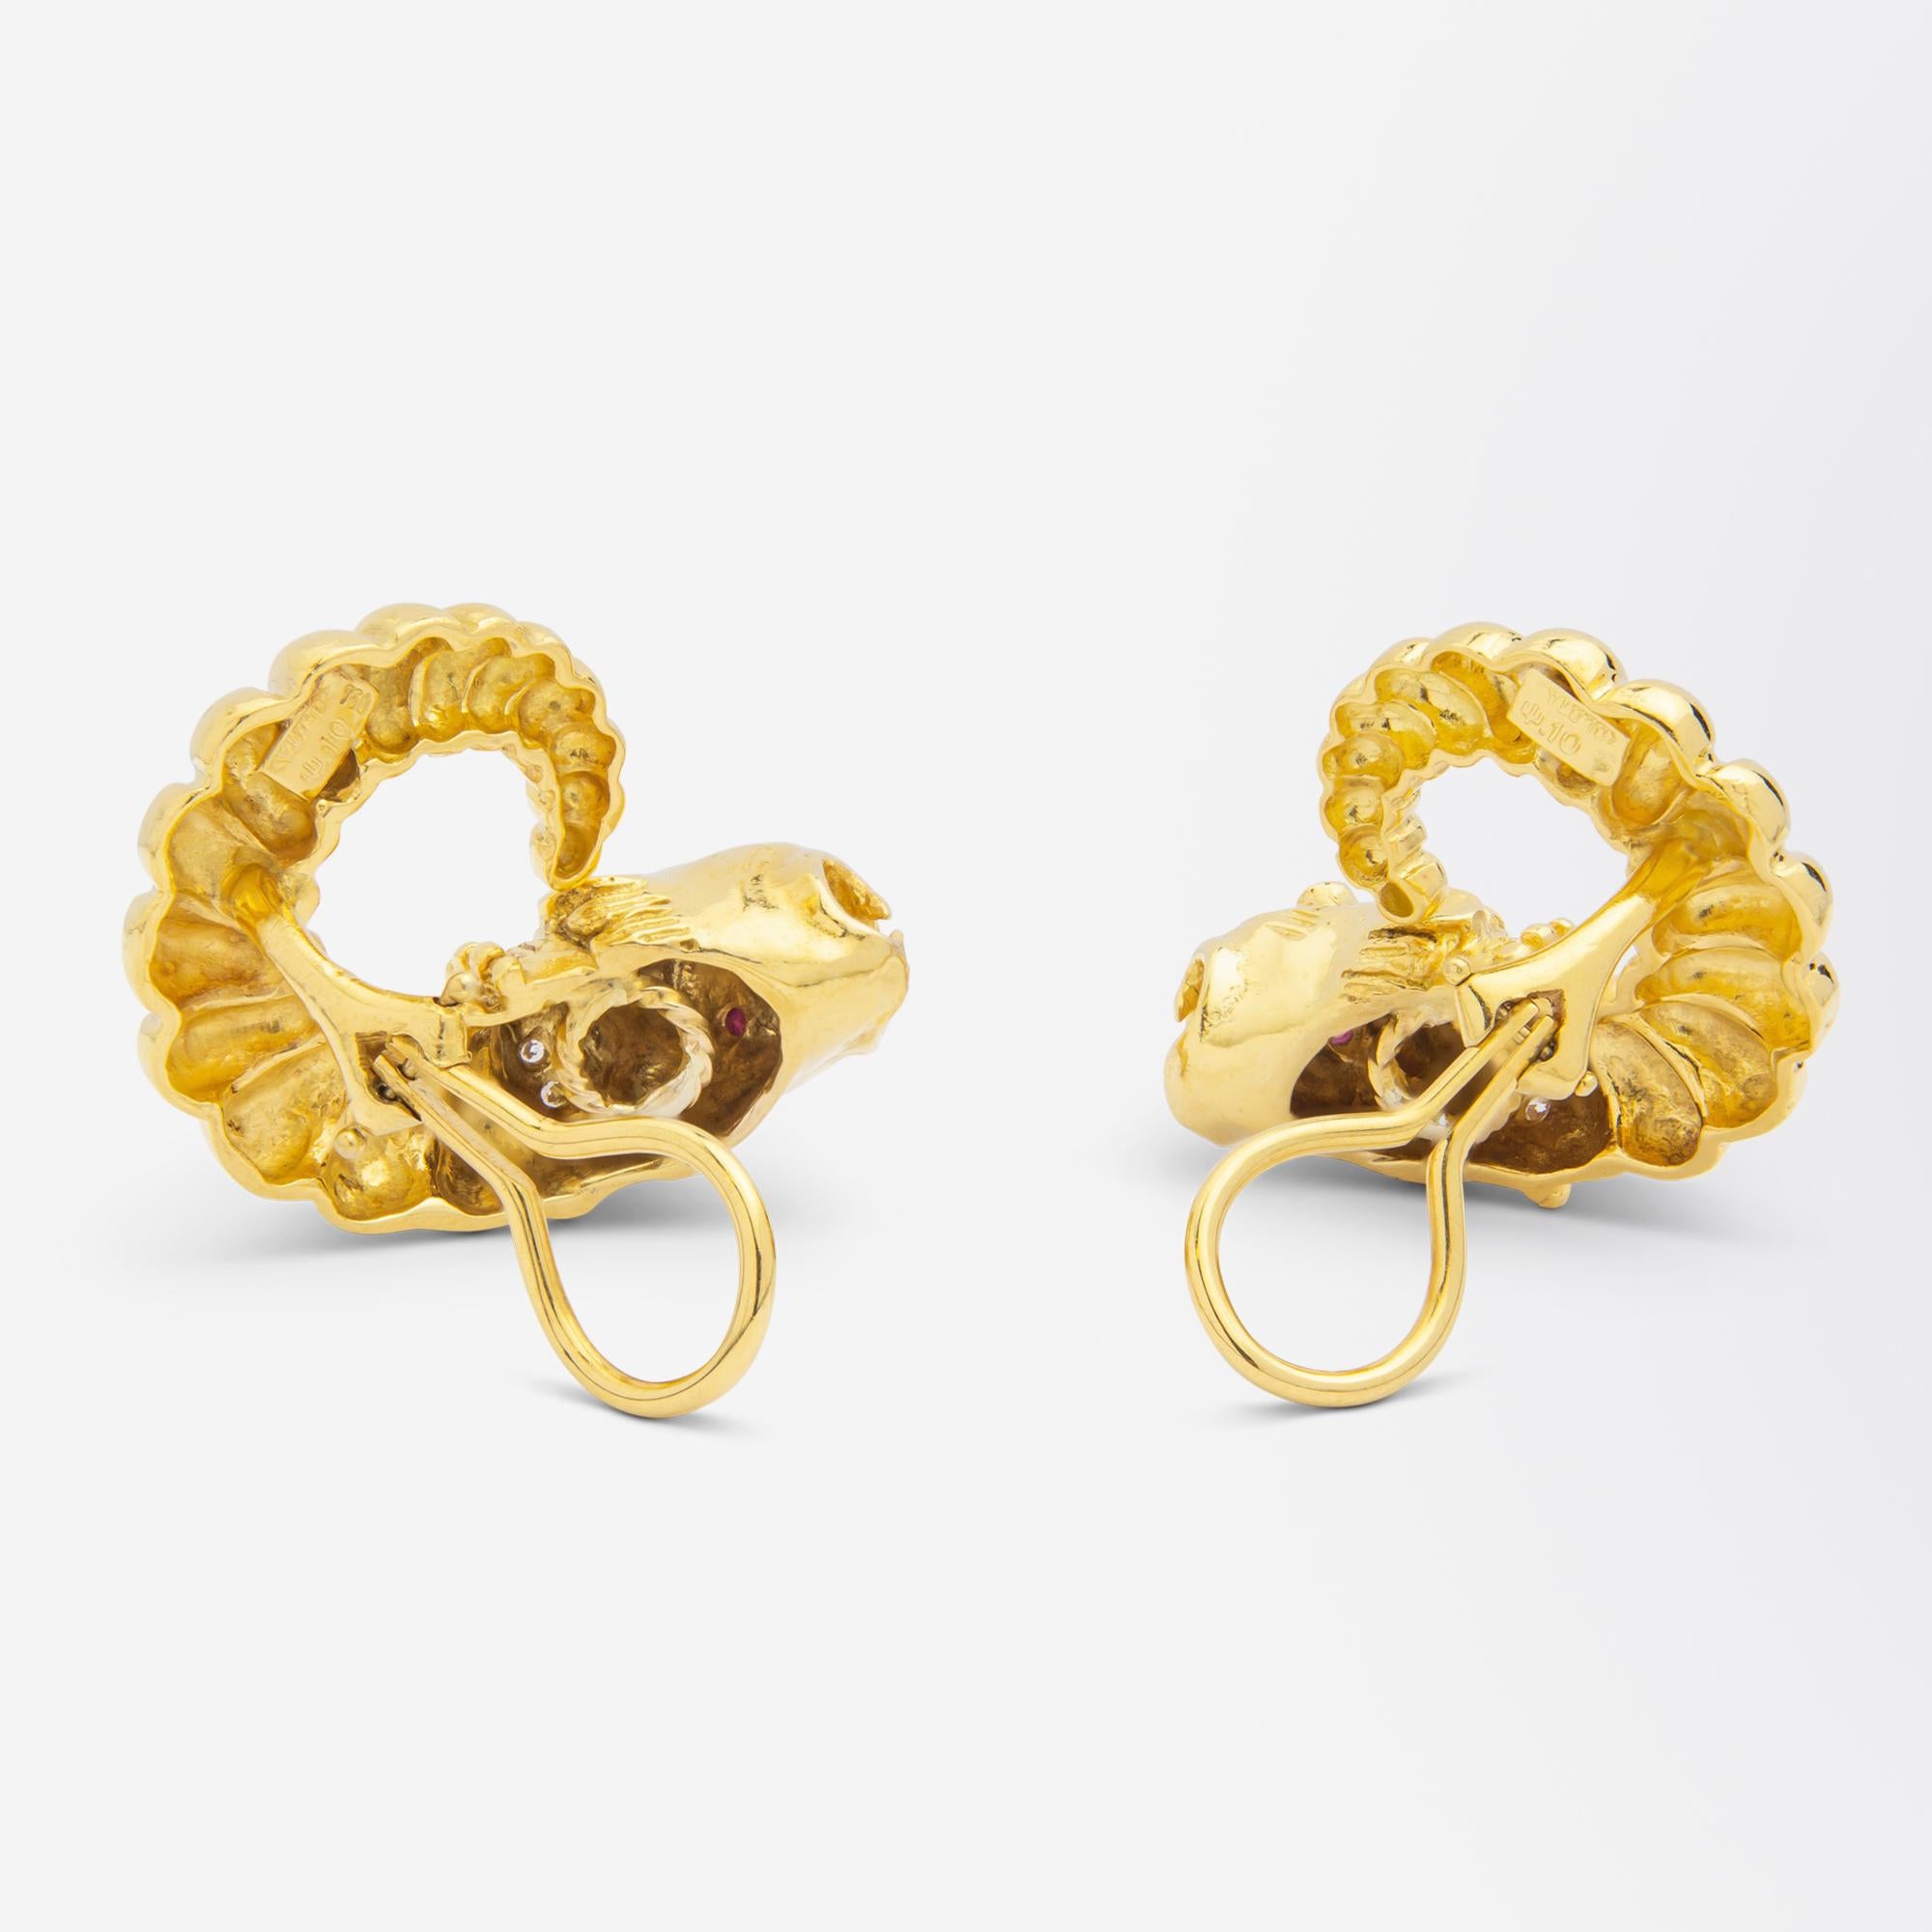 Modern Zolotas 'Chimera' Ear-Clips in 18 Karat Gold, Rubies & Diamonds